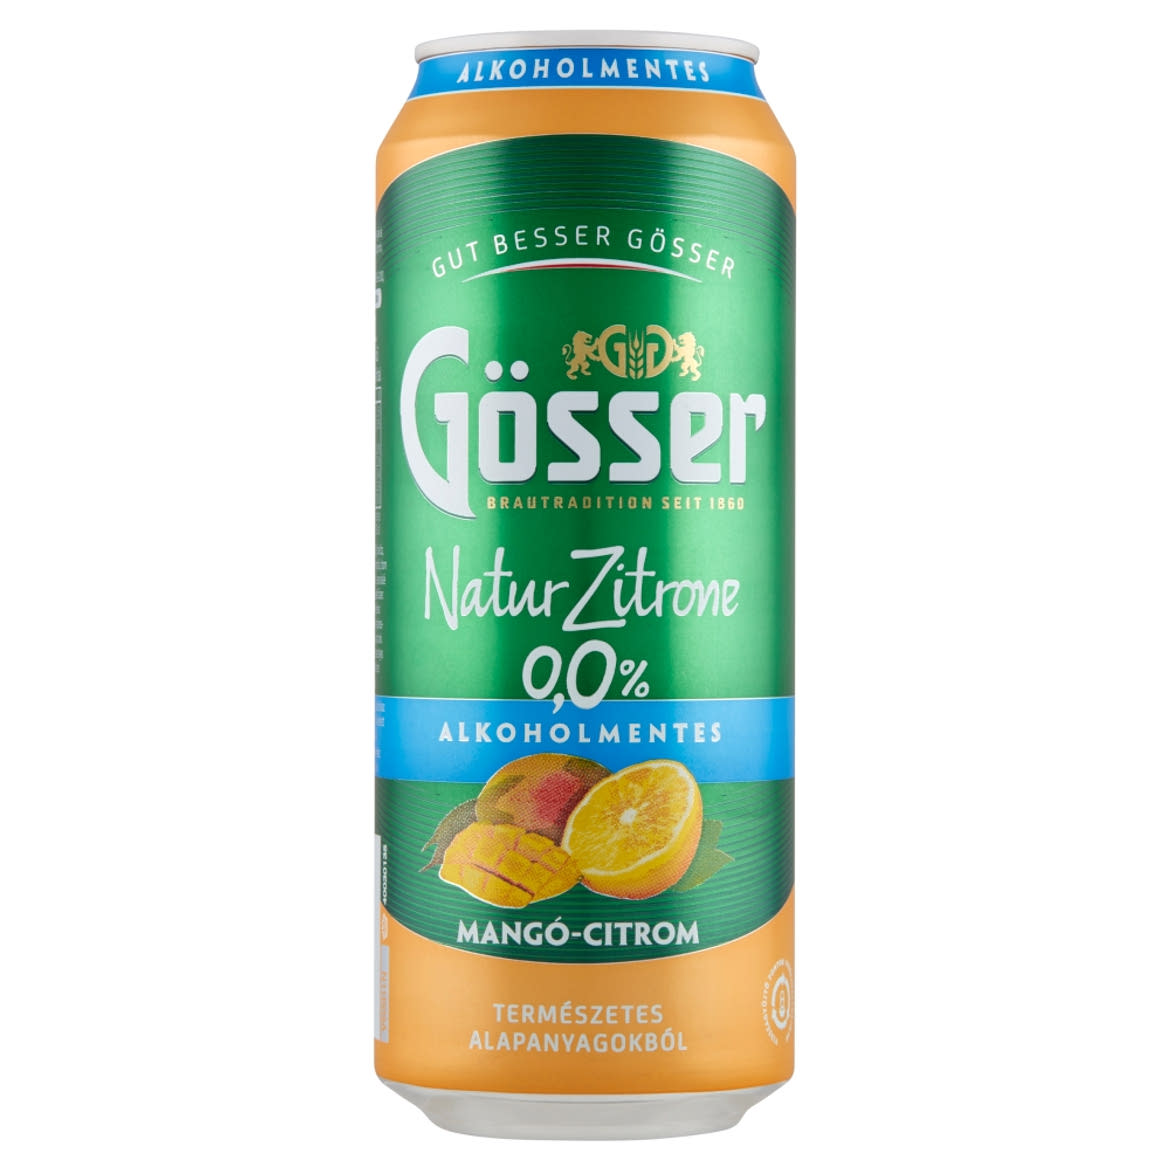 Gösser Natur Zitrone mangó-citrom ízű alkoholmentes sörital 0,0%